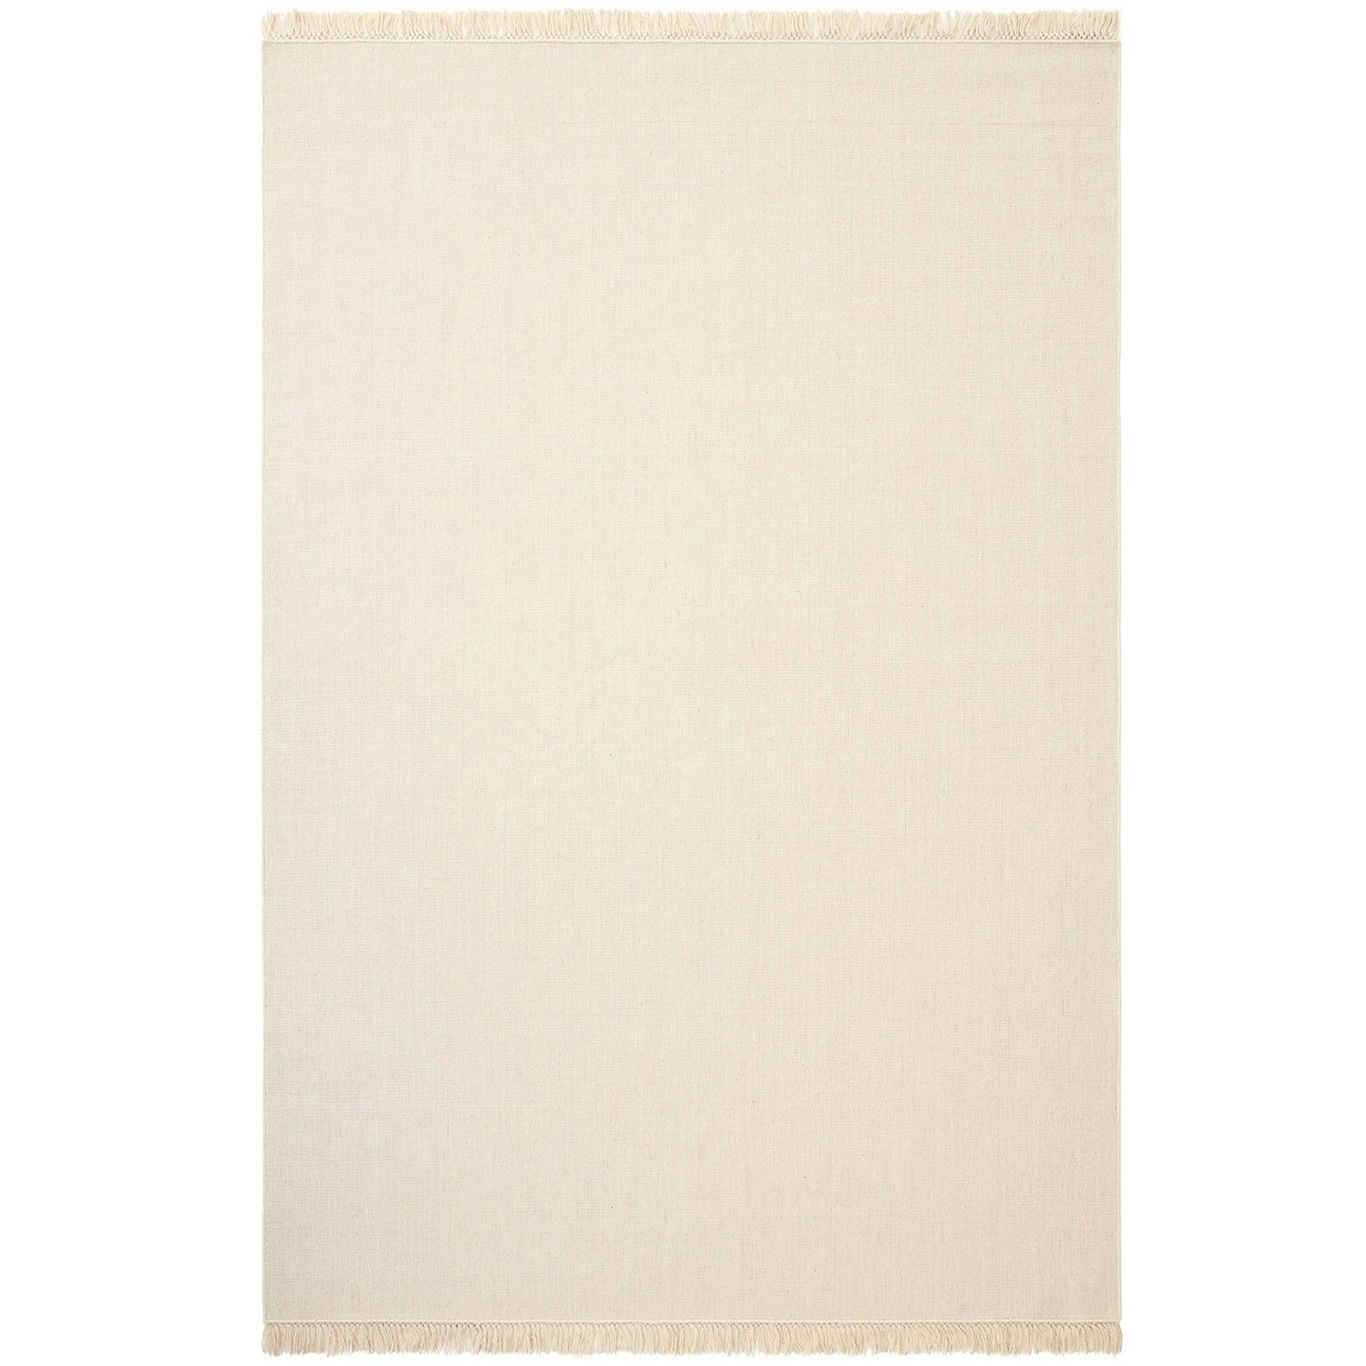 Nanda Teppe Off-white, 250x350 cm